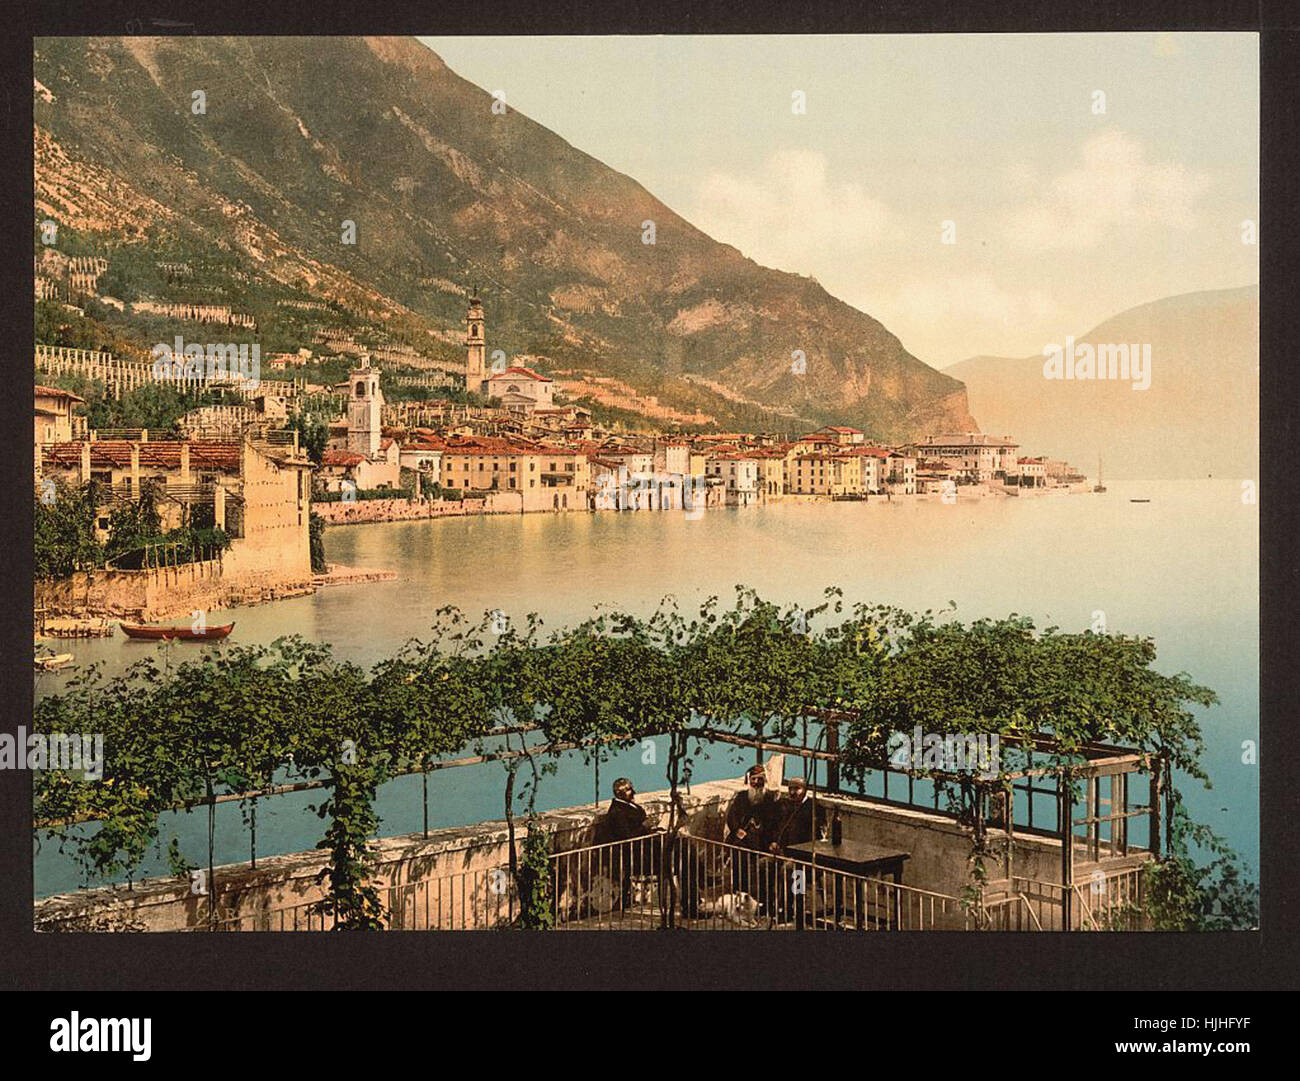 Gesamtansicht, Gargnano, Gardasee, Italien - Photochrom XIXth Jahrhundert Stockfoto